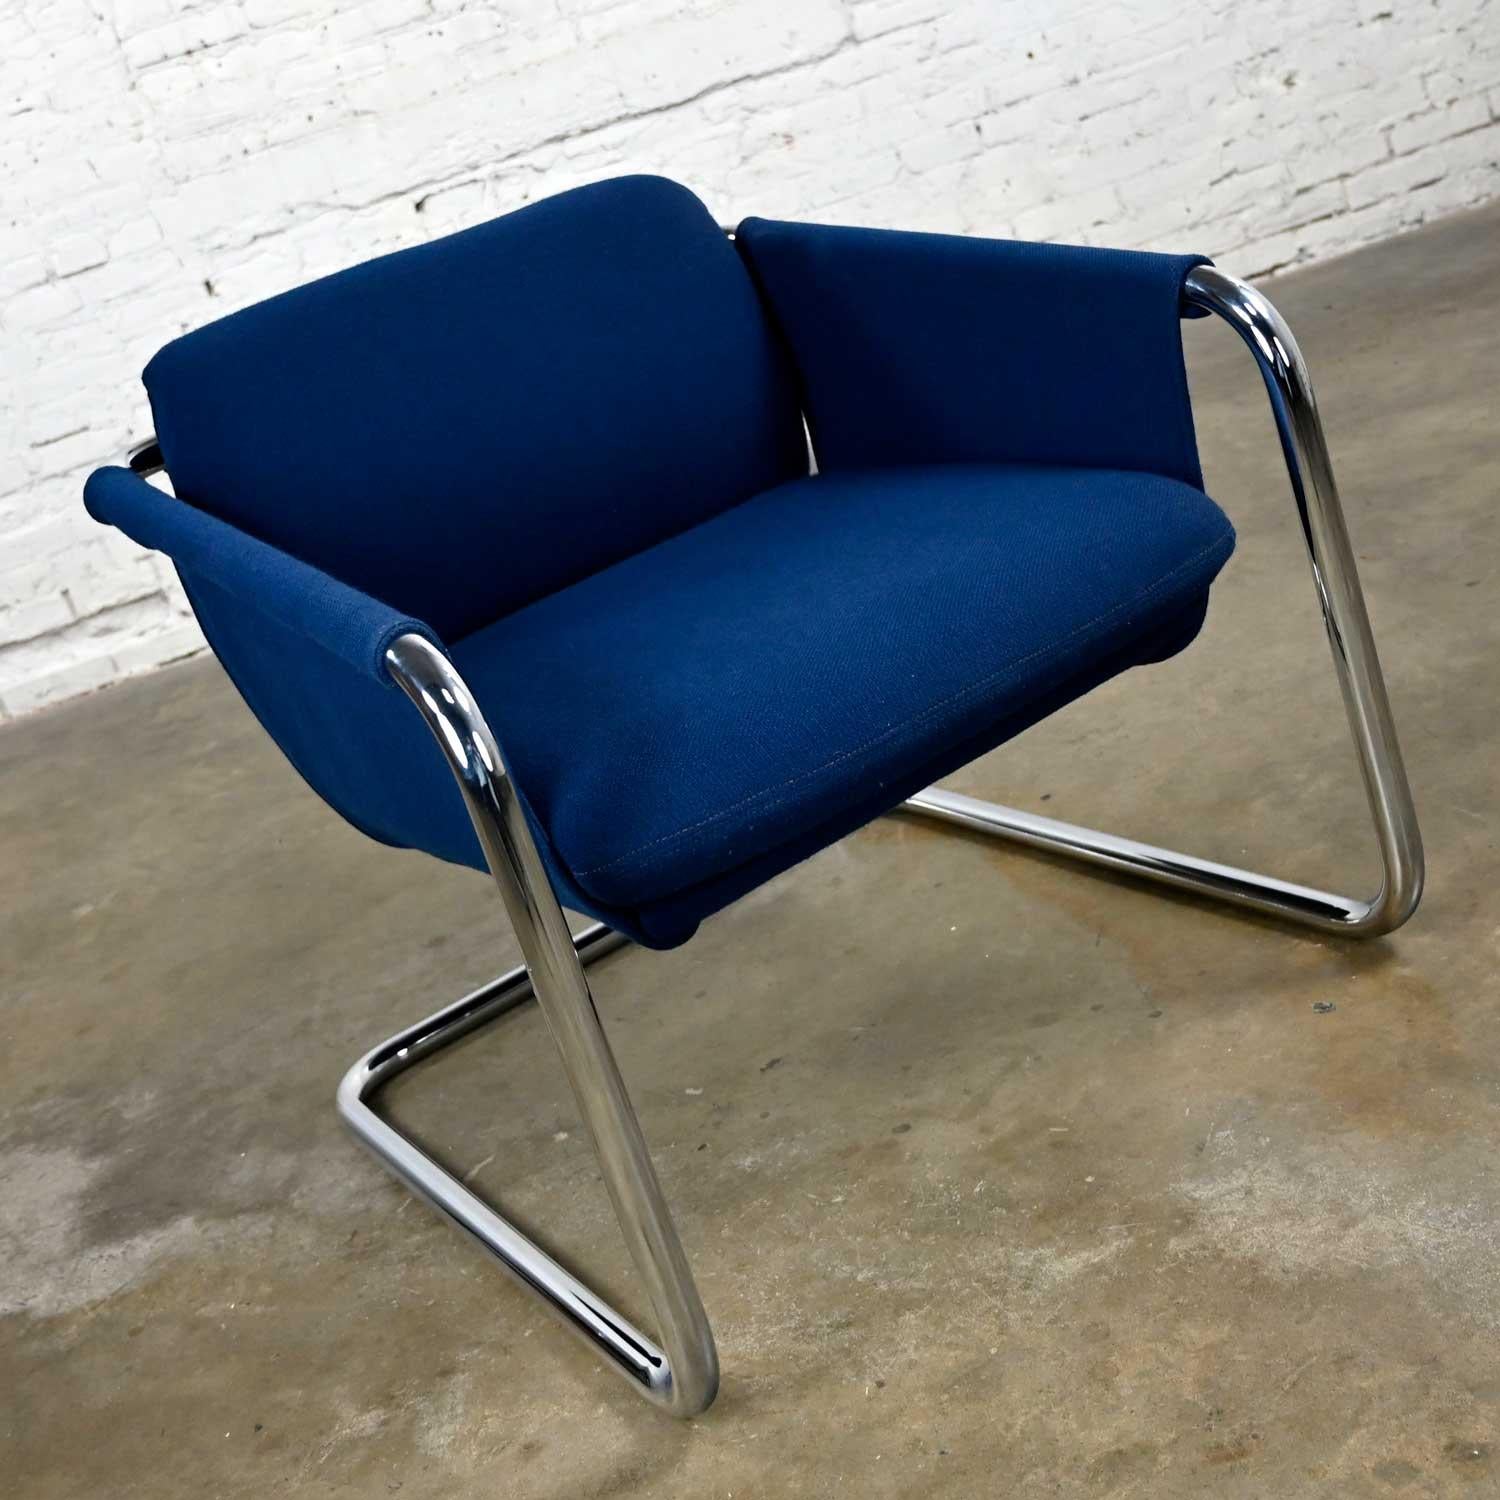 Fantastique chaise cantilever moderne vintage avec tissu bleu royal original et structure tubulaire chromée. Bel état, en gardant à l'esprit qu'il s'agit d'un produit vintage et non neuf, qui présente donc des signes d'utilisation et d'usure. Il a